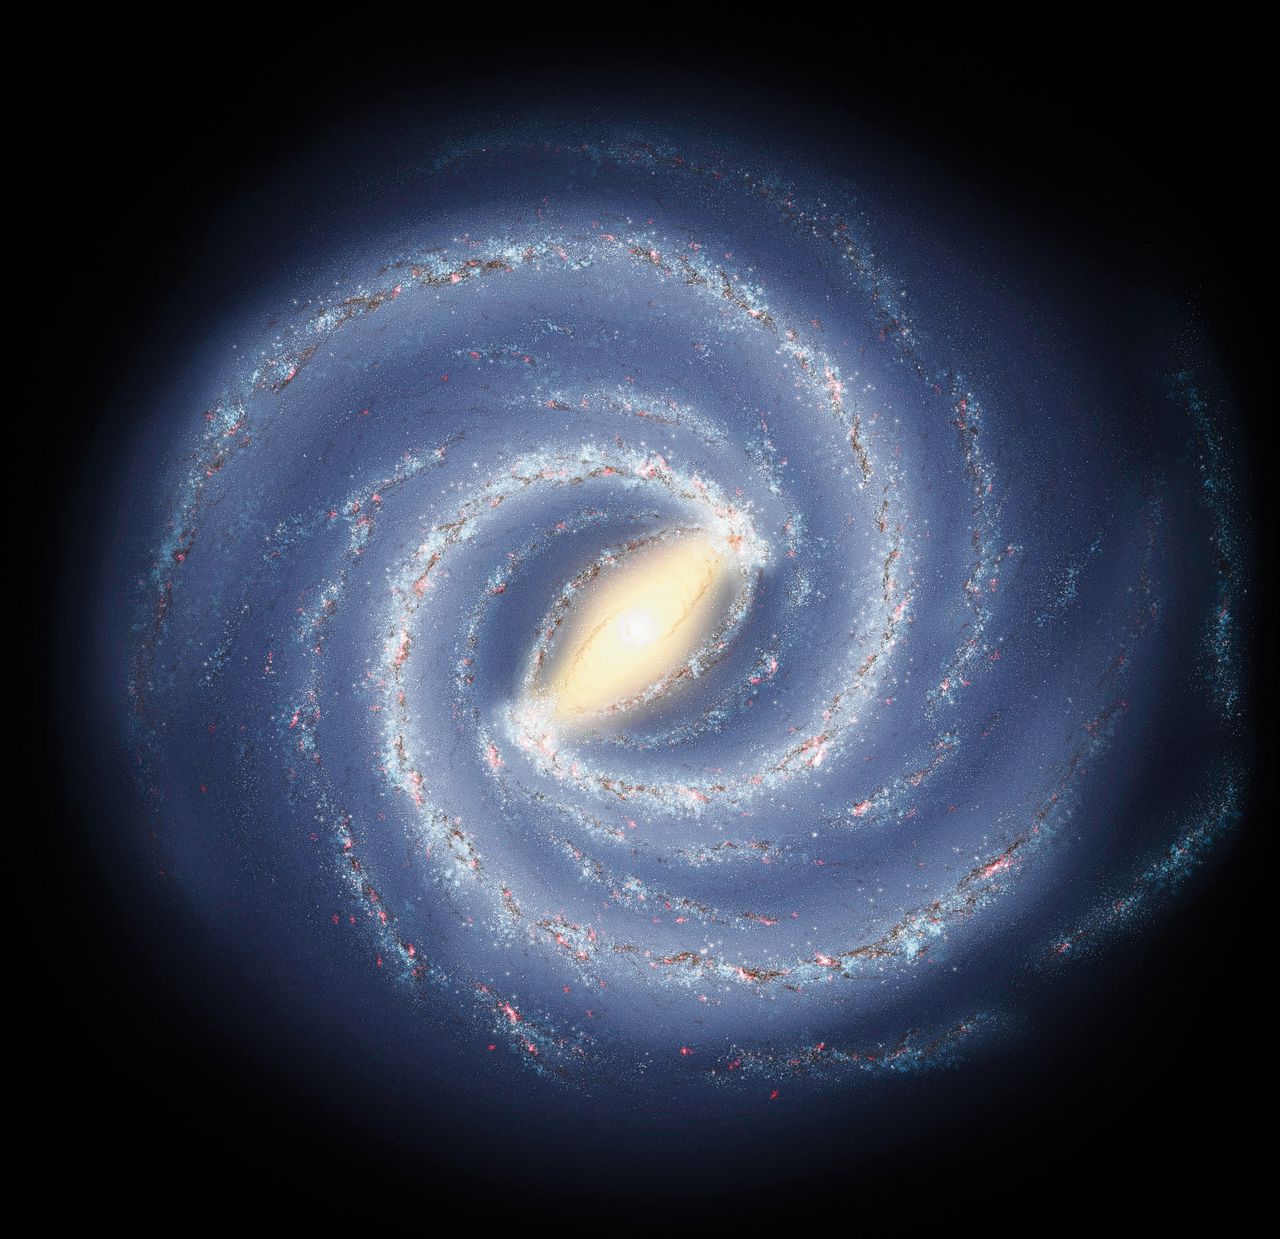 Impressie van de Melkweg, met in het midden de gigantische sterrenbalk.